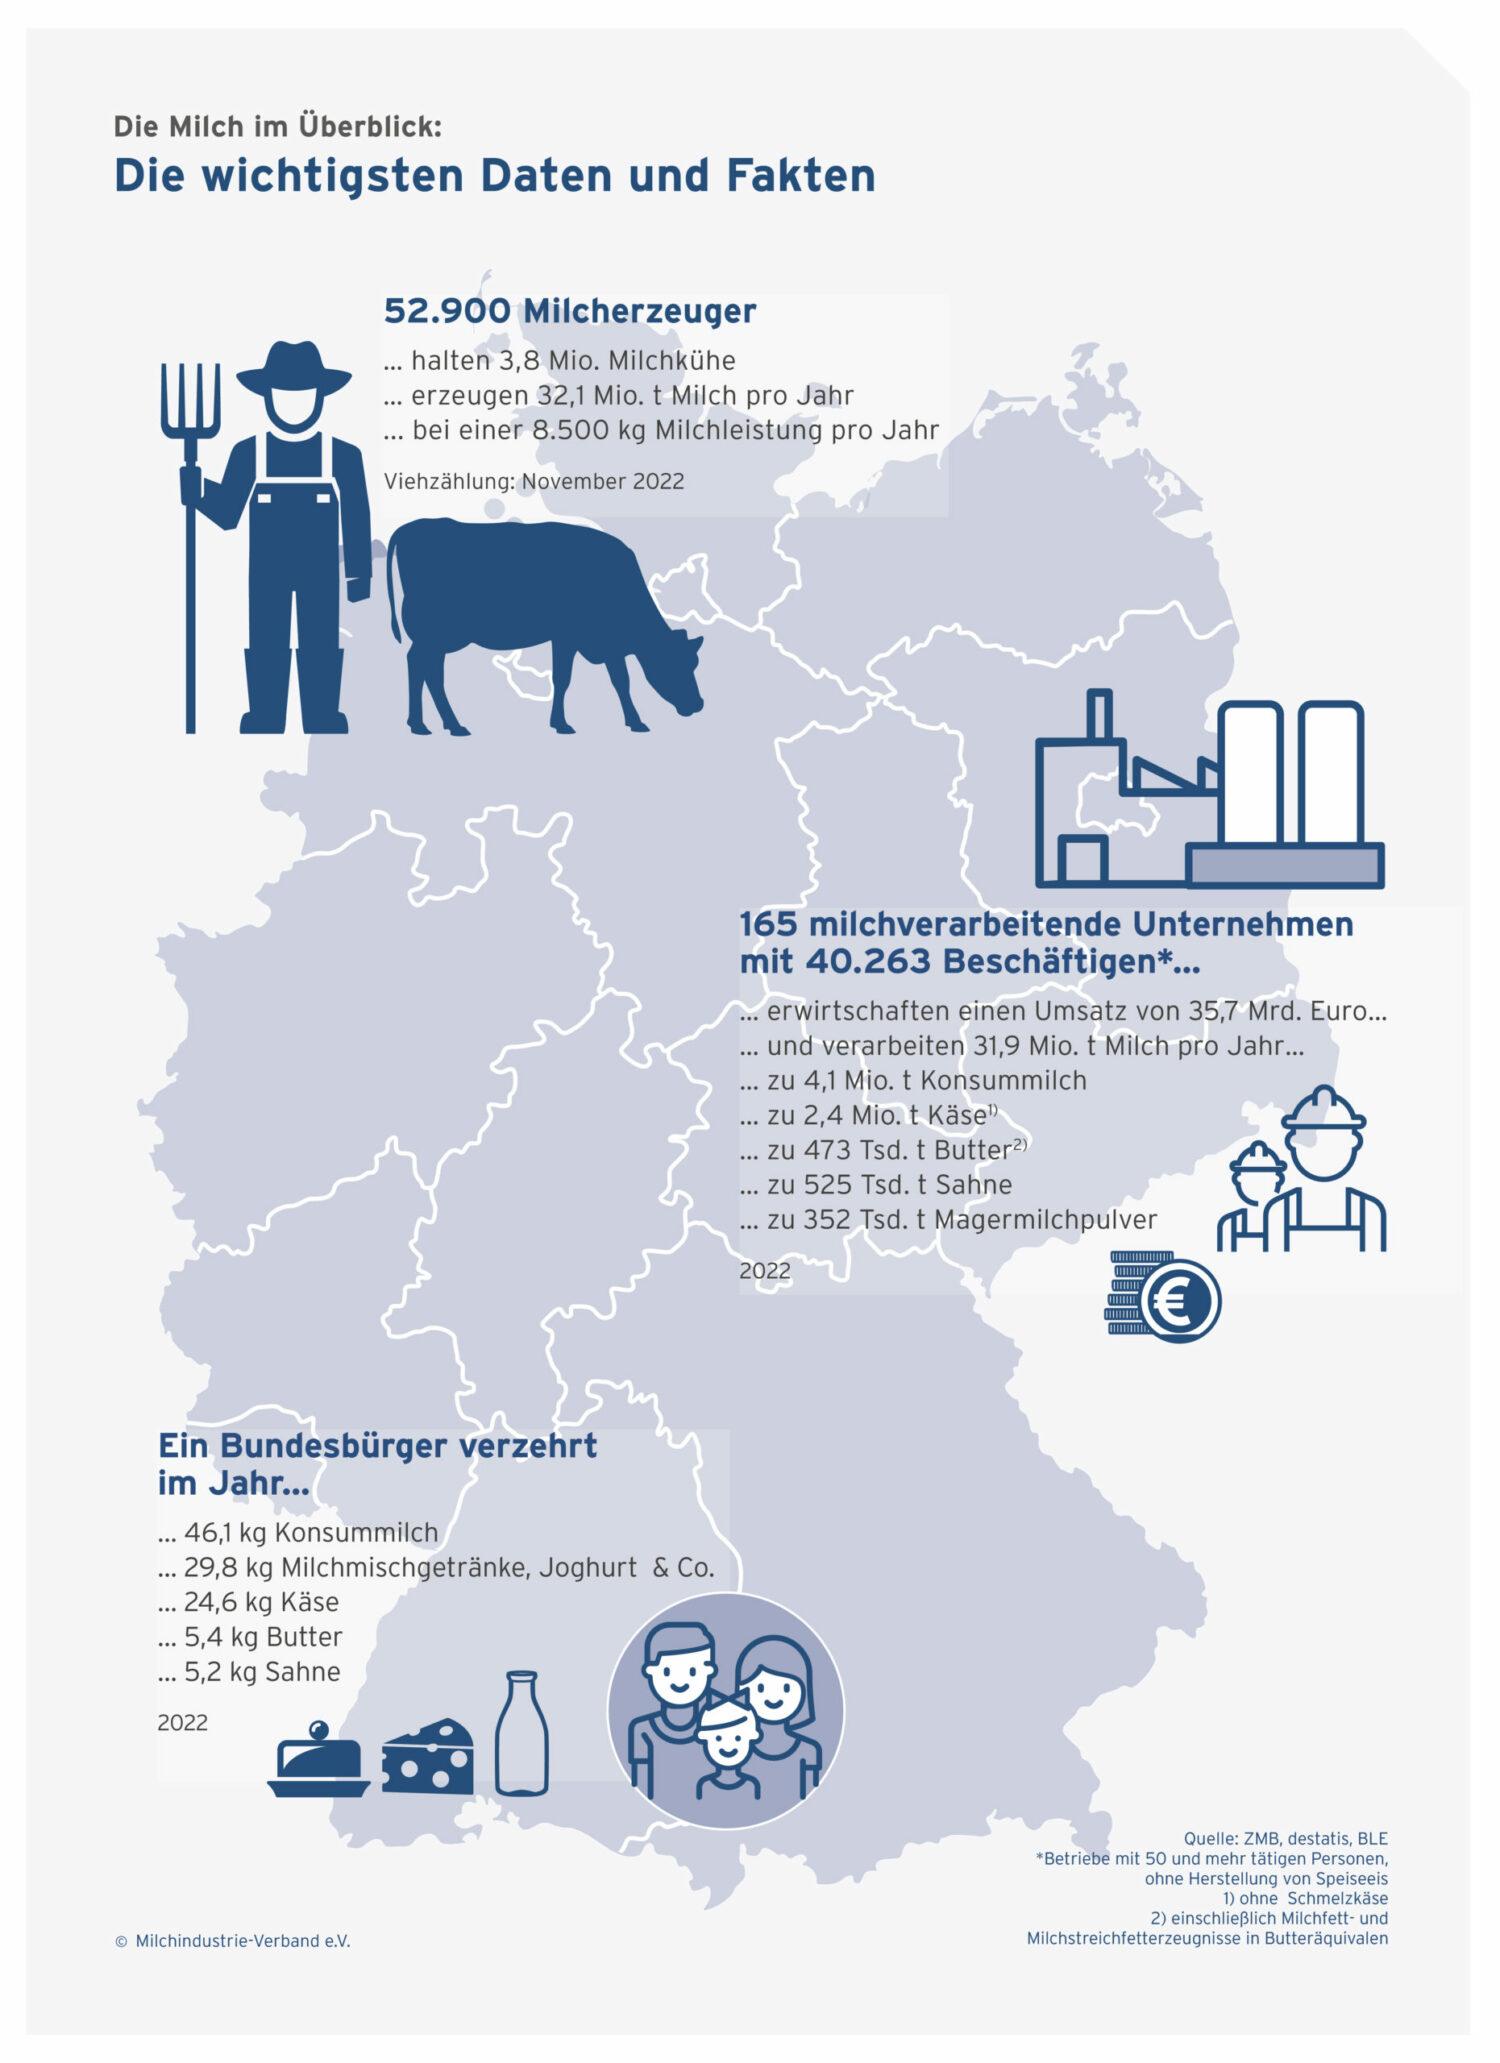 Die Grafik zeigt Eckdaten zur Milchindustrie in Deutschland im Jahr 2022: von der Produktion über die Weiterverarbeitung zum Konsum. 